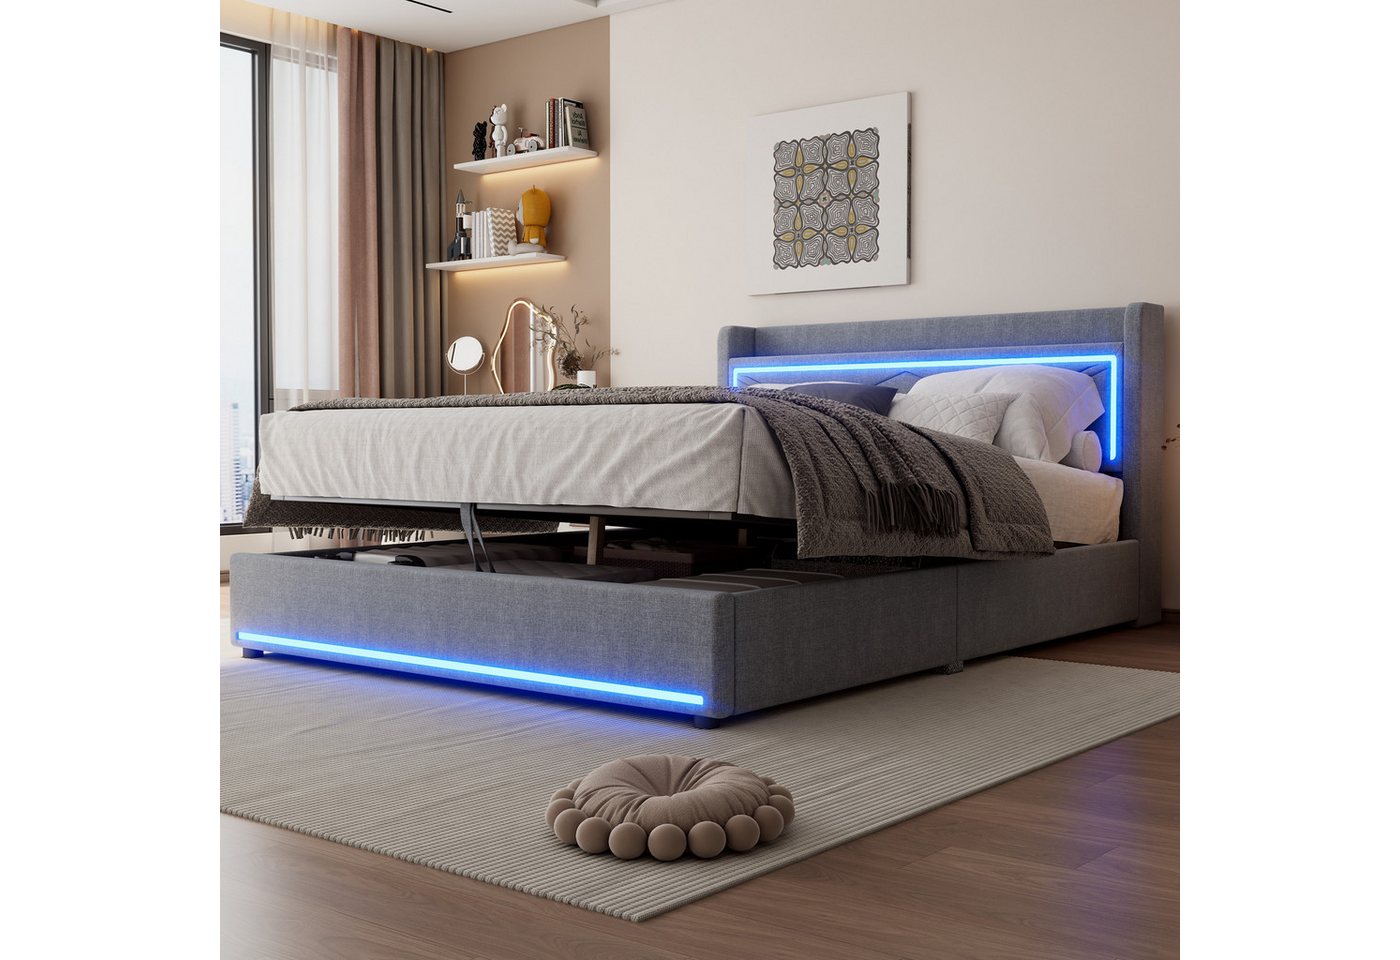 LIFEISLE Polsterbett Ambientelicht am Ende des Bettes, App verstellbar, USB günstig online kaufen